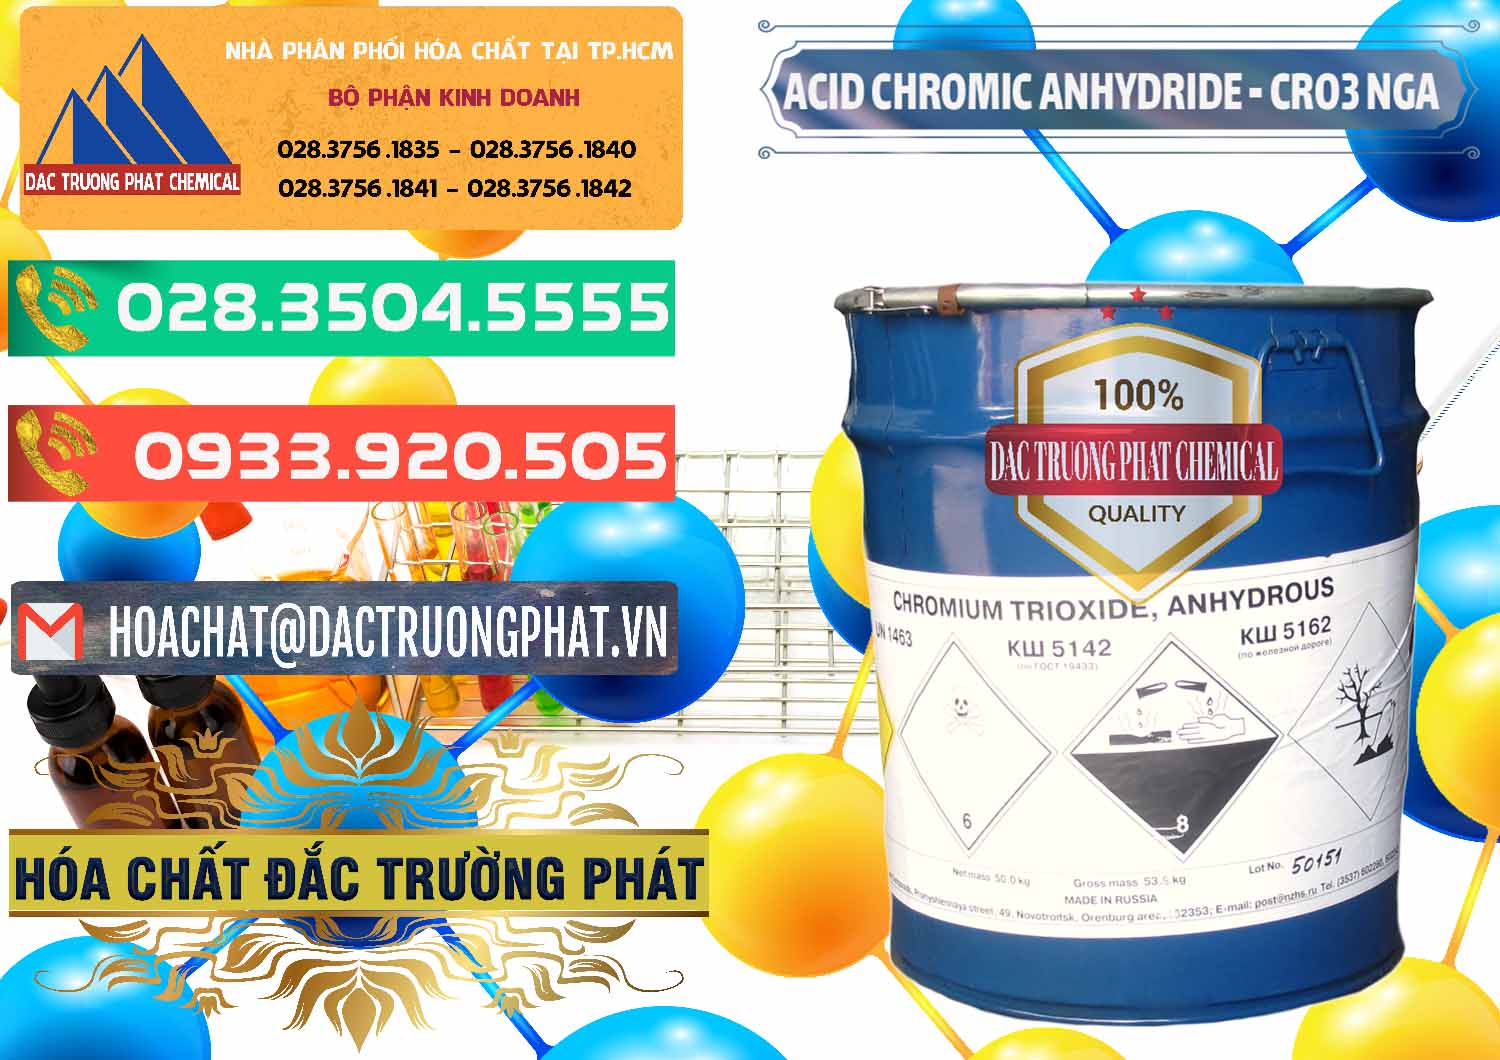 Nơi chuyên bán & cung ứng Acid Chromic Anhydride - Cromic CRO3 Nga Russia - 0006 - Công ty chuyên phân phối ( cung ứng ) hóa chất tại TP.HCM - congtyhoachat.com.vn